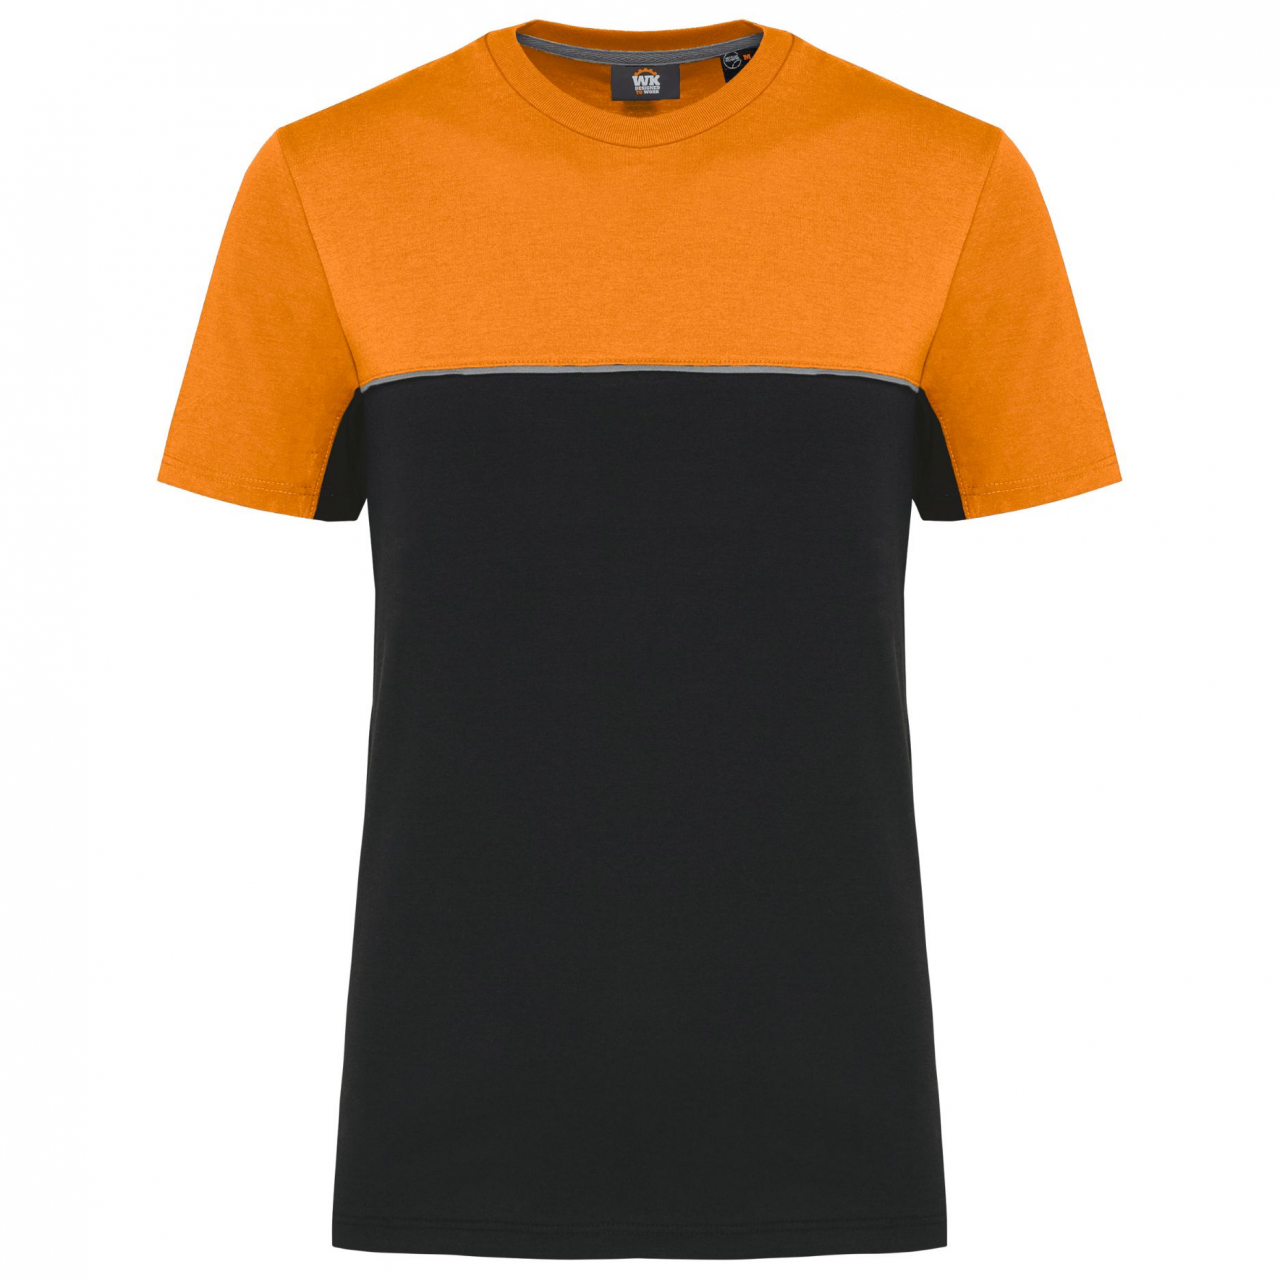 Pracovní triko dvoubarevné WK - černé-oranžové, XXL